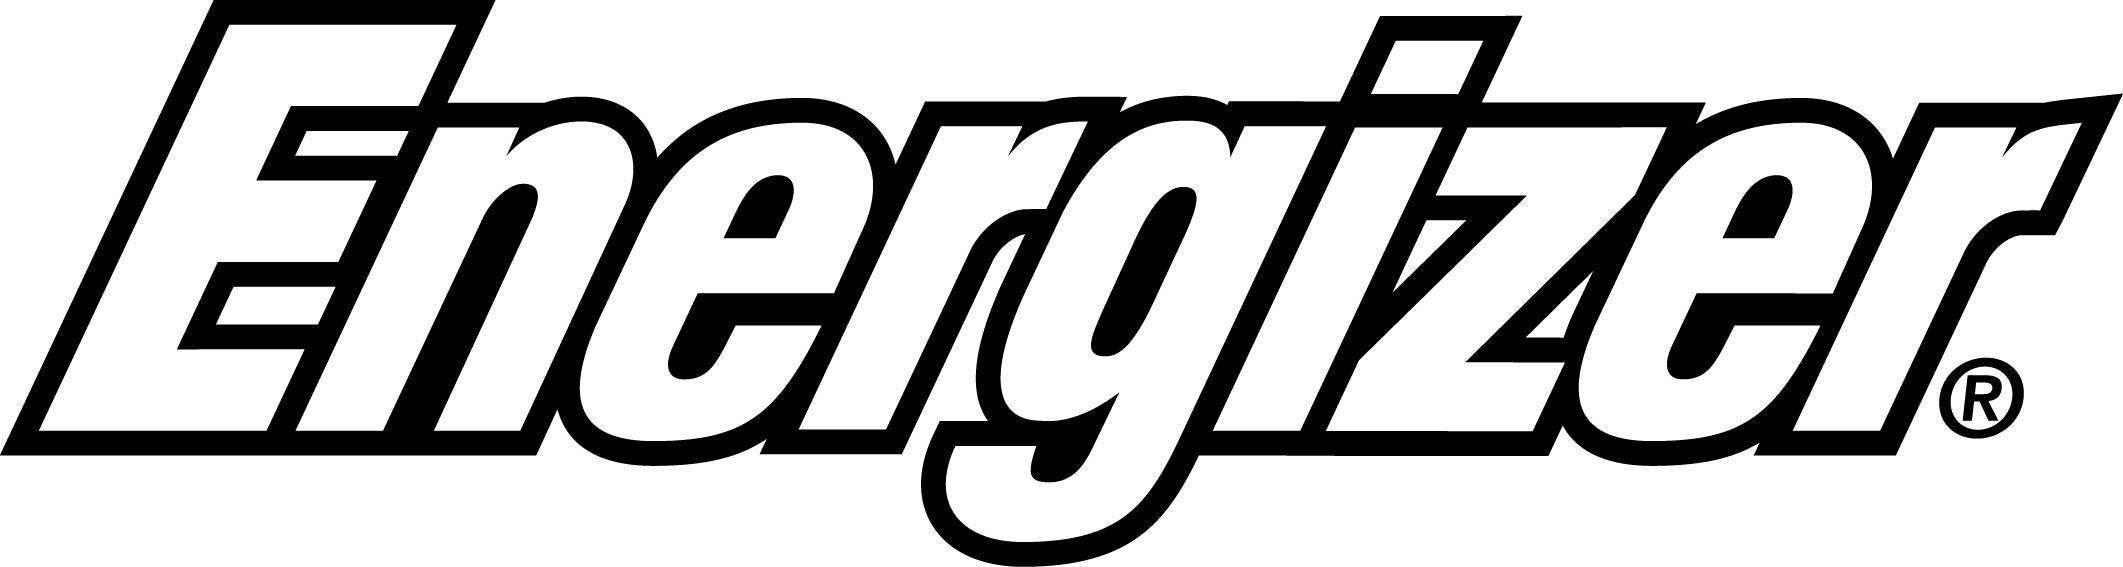 Energizer Logo PNG - 100819